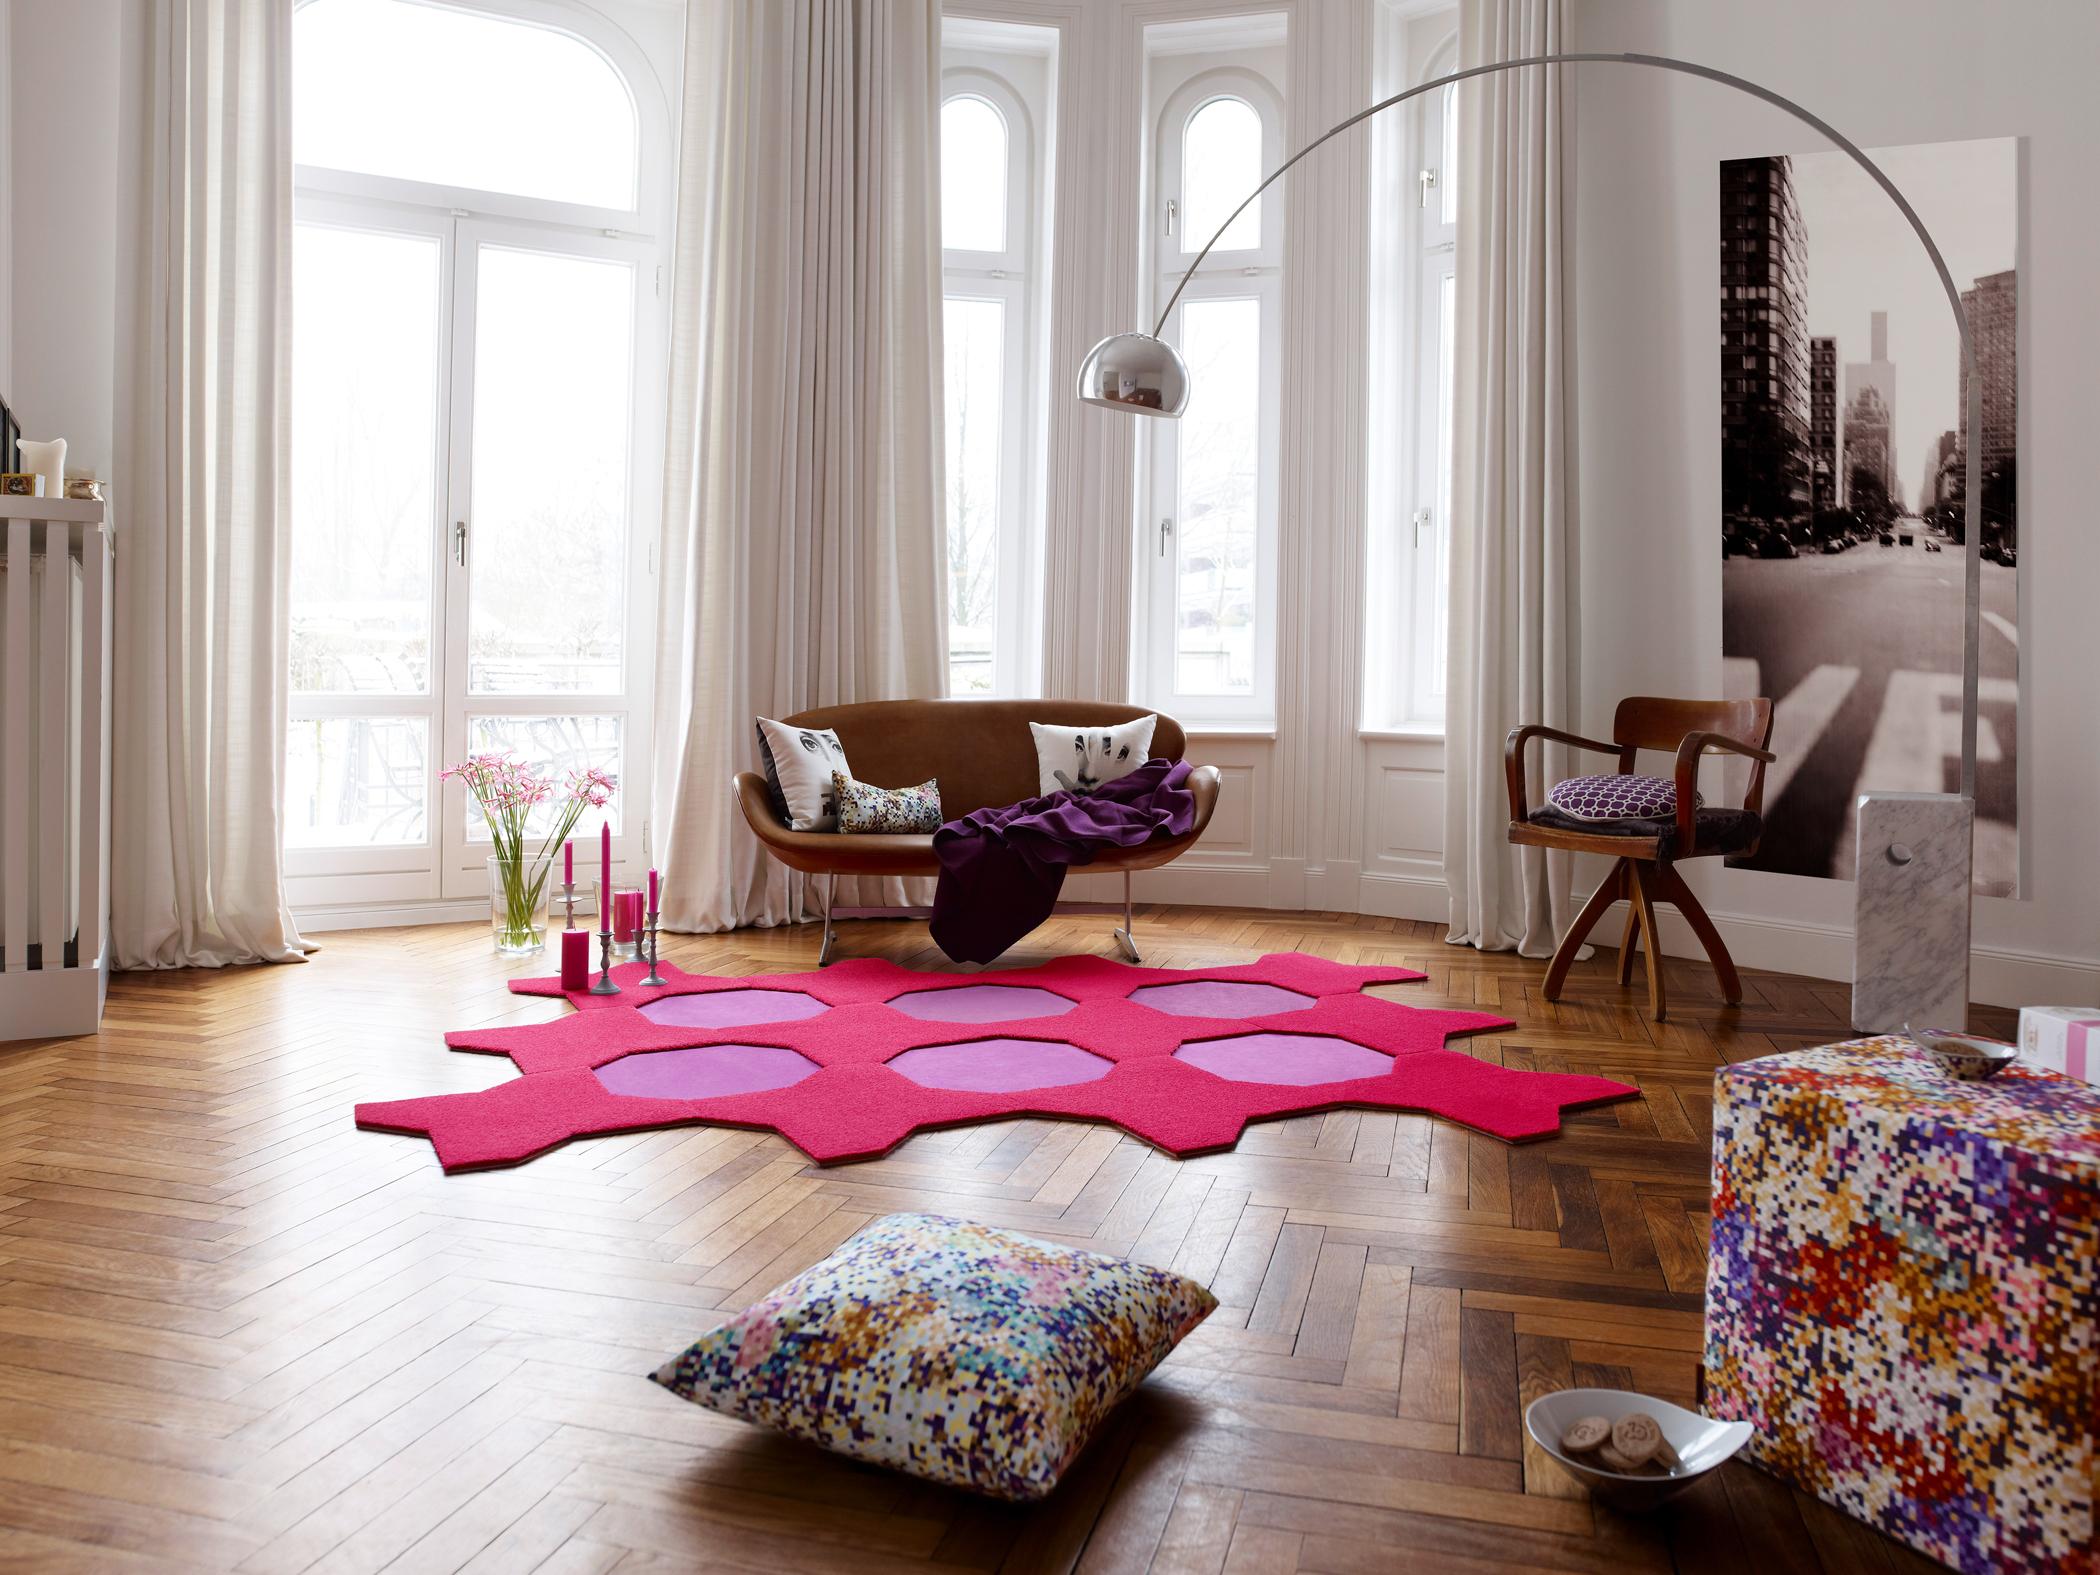 Bogenleuchte mit Retro-Feeling #teppich #sessel #pouf #vorhang #pinkfarbenerteppich #sofa #braunessofa ©Bernd Opitz für Vorwerk